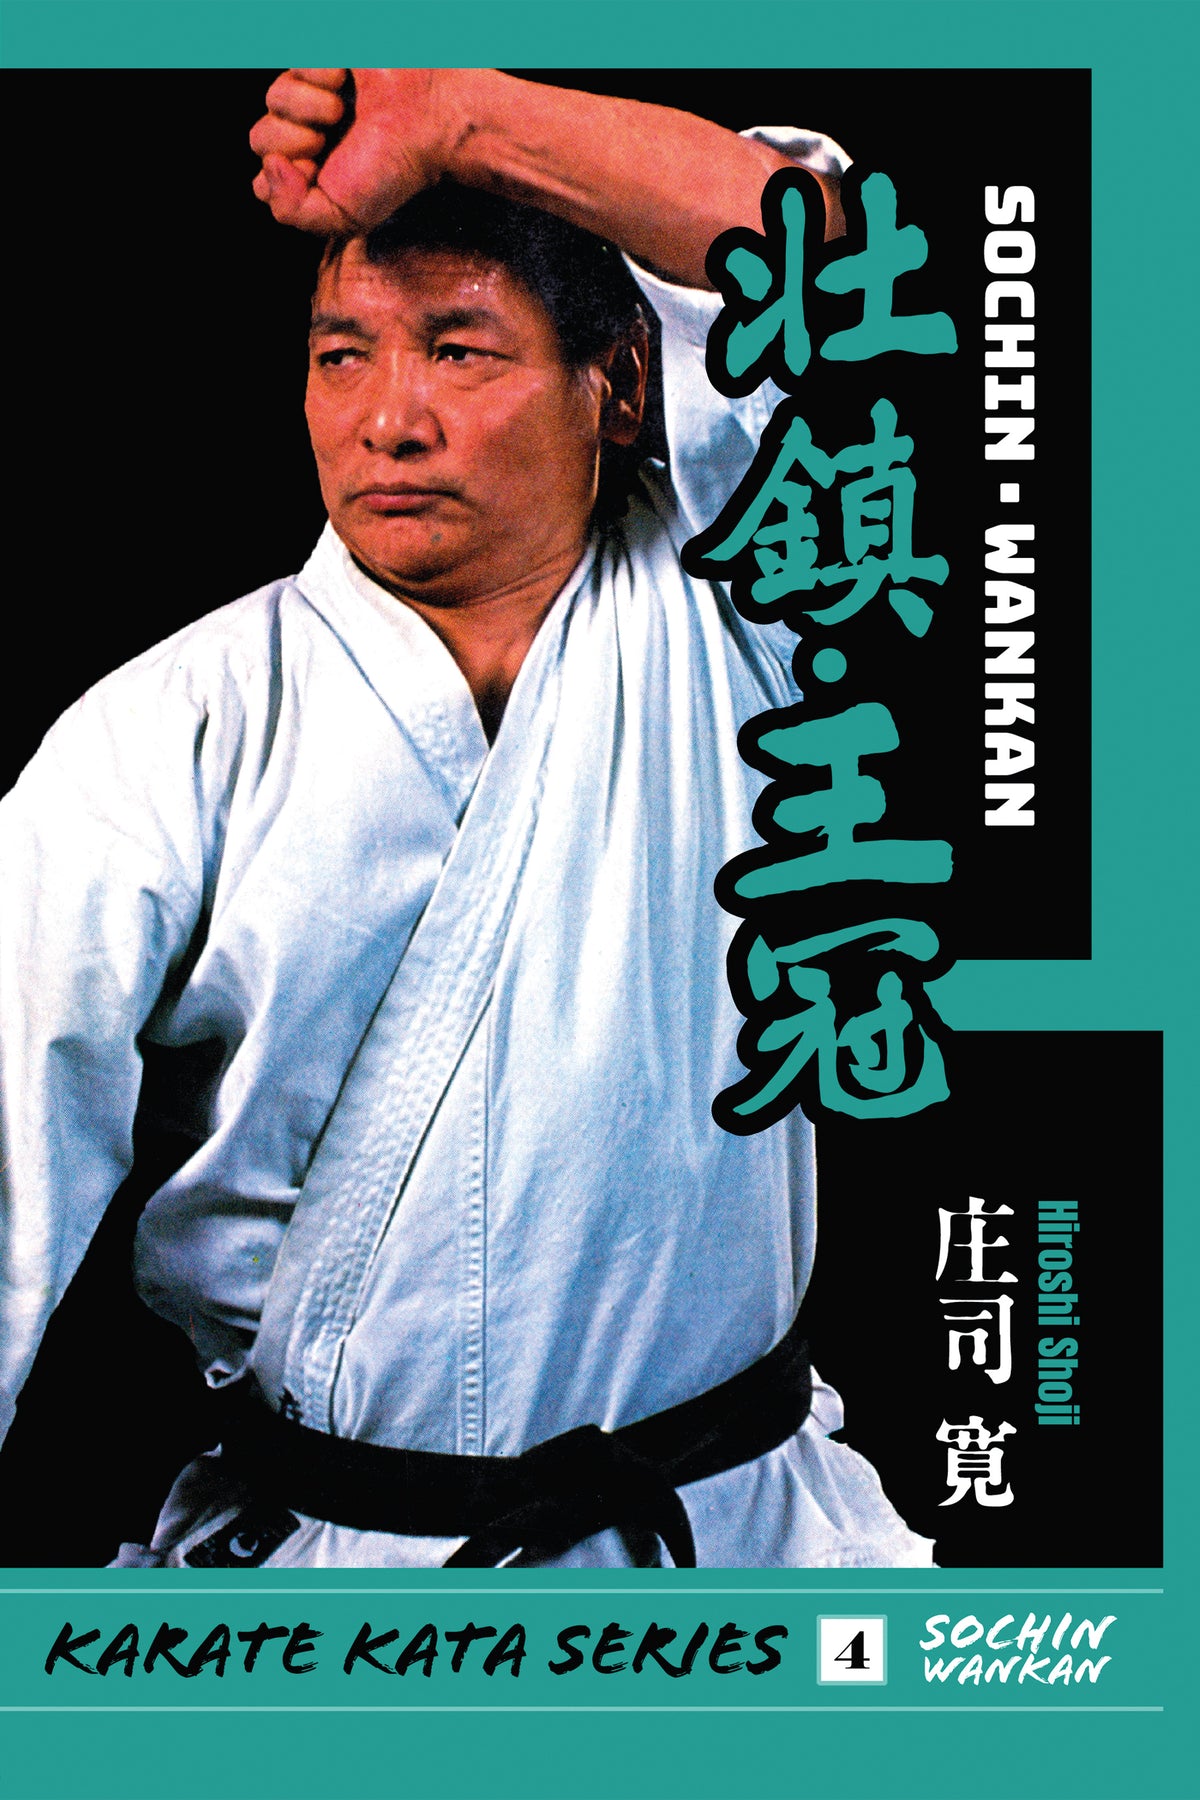 DIGITAL E-BOOK Karate Kata #4 Sochin and Wankan by Hiroshi Shoji